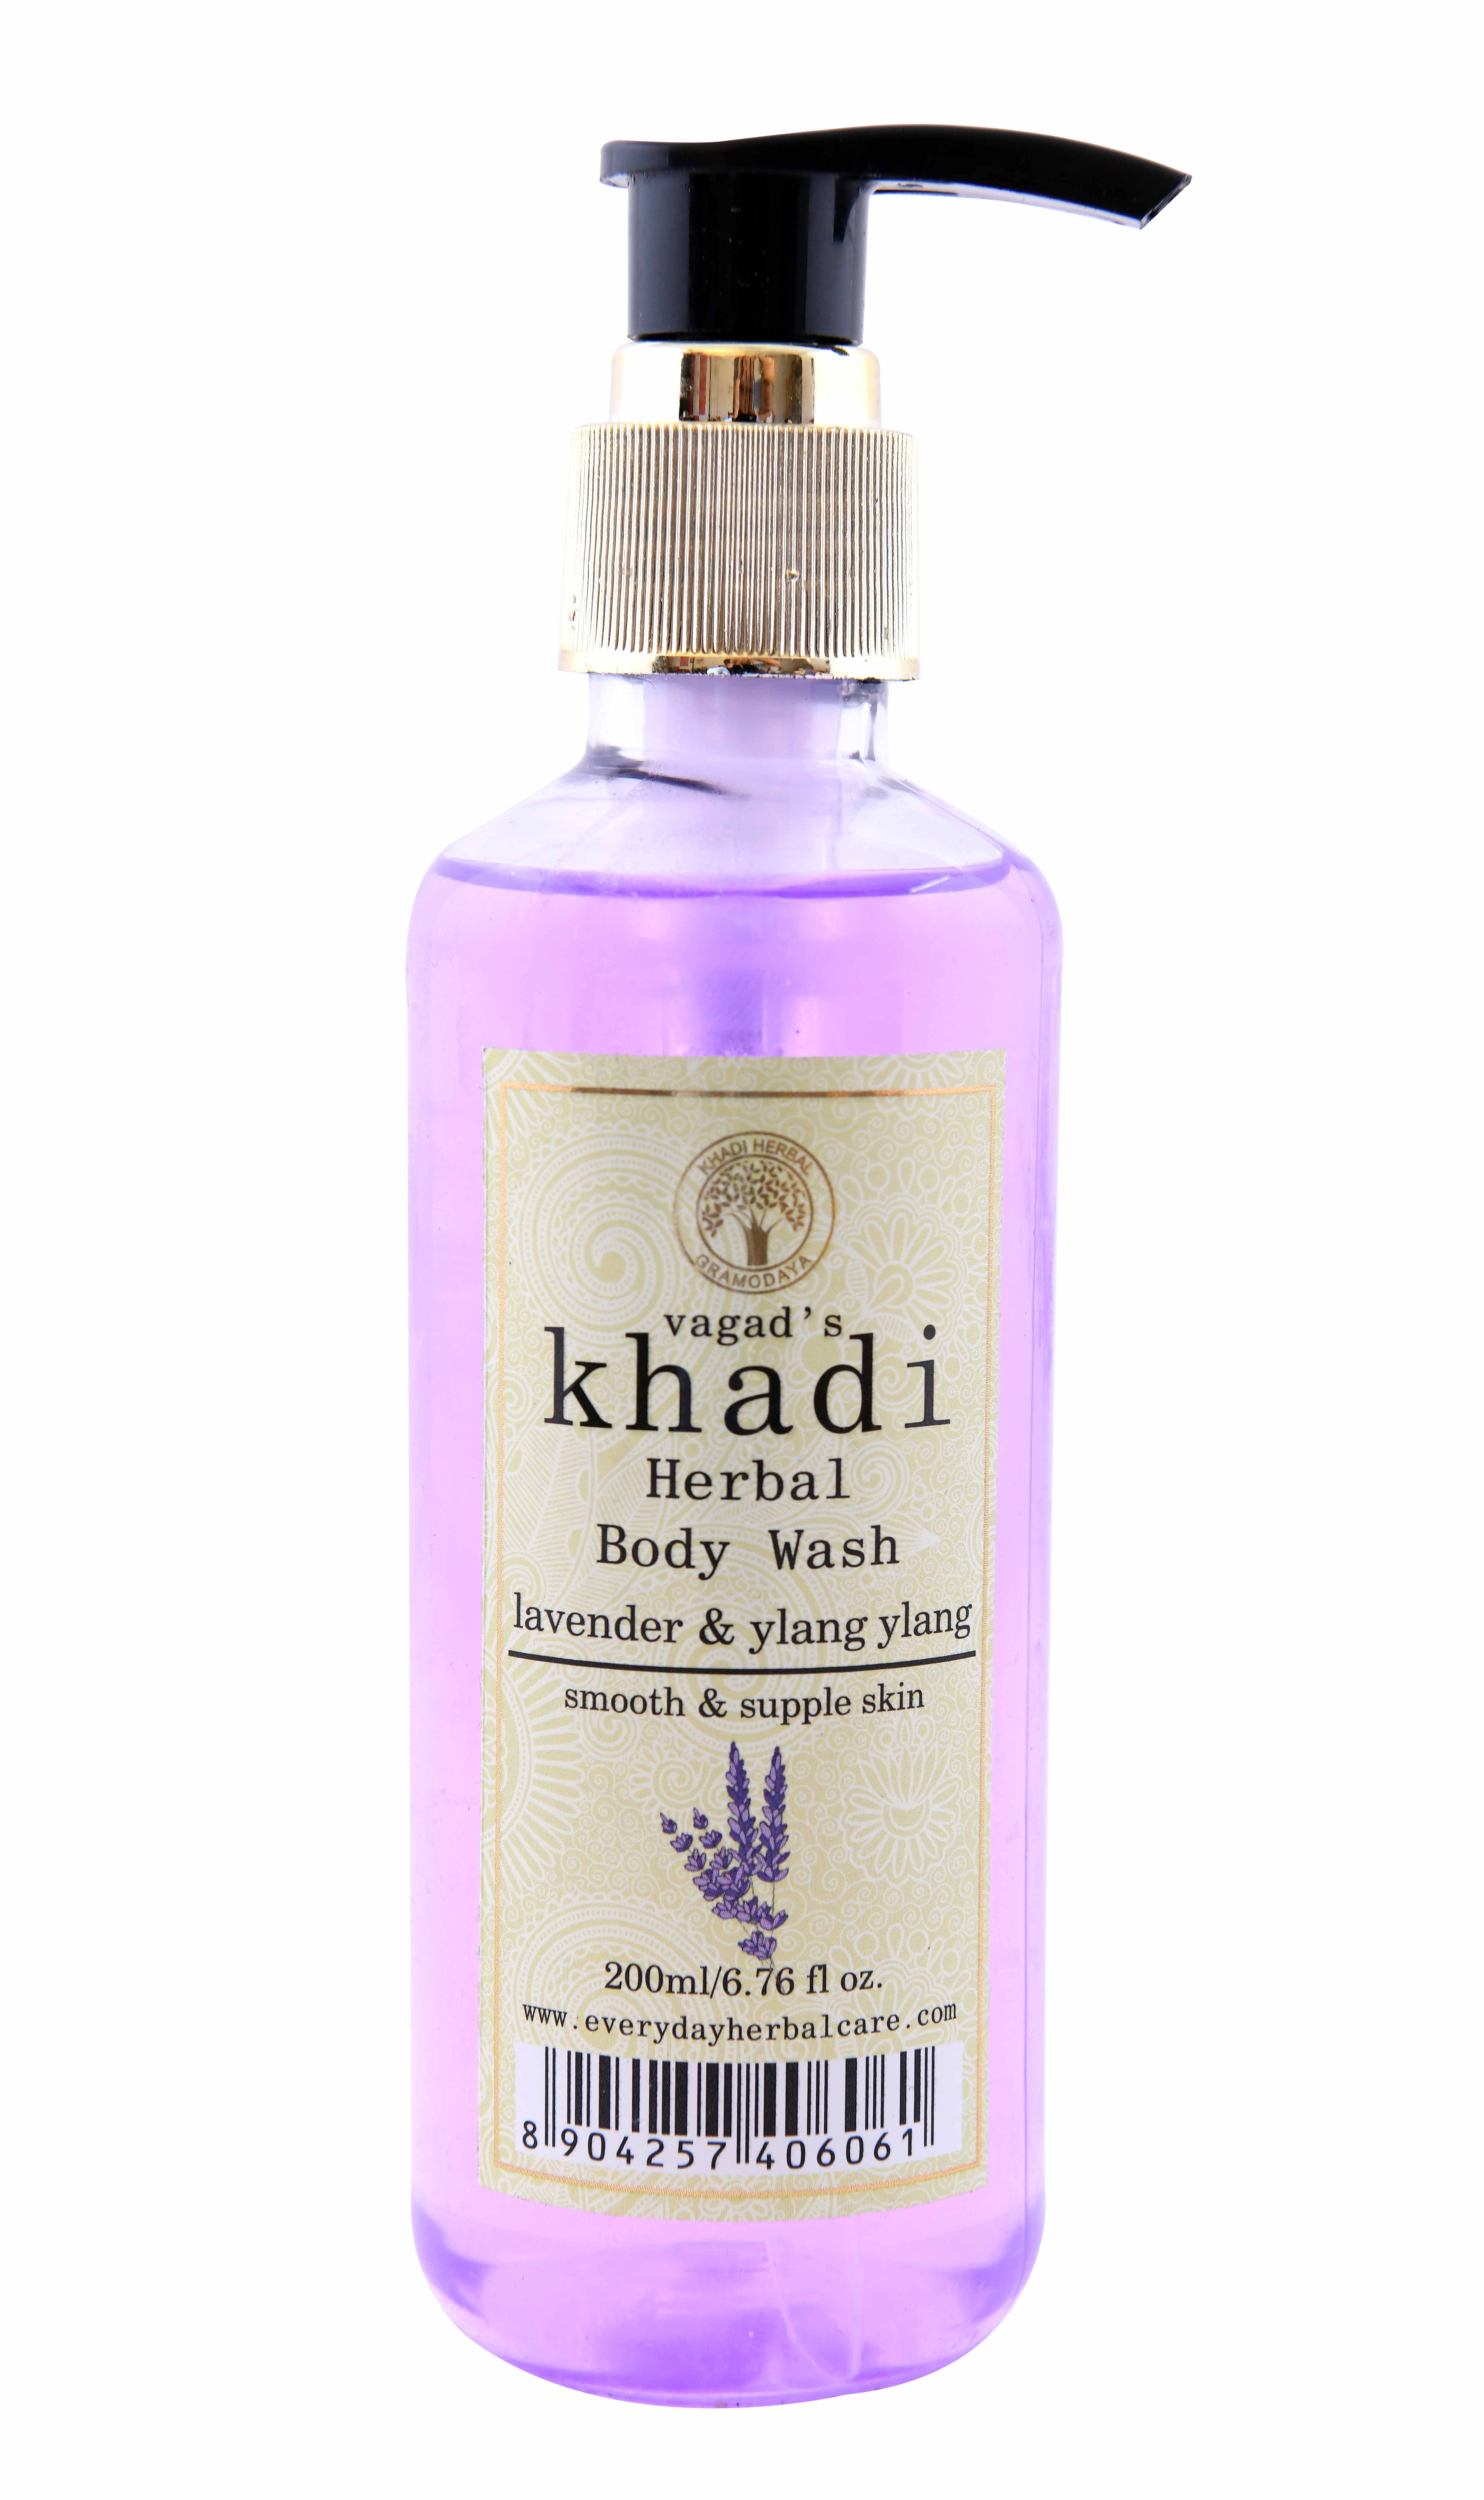 Buy Vagad's Khadi Lavender And Ylang Ylang Body Wash at Best Price Online